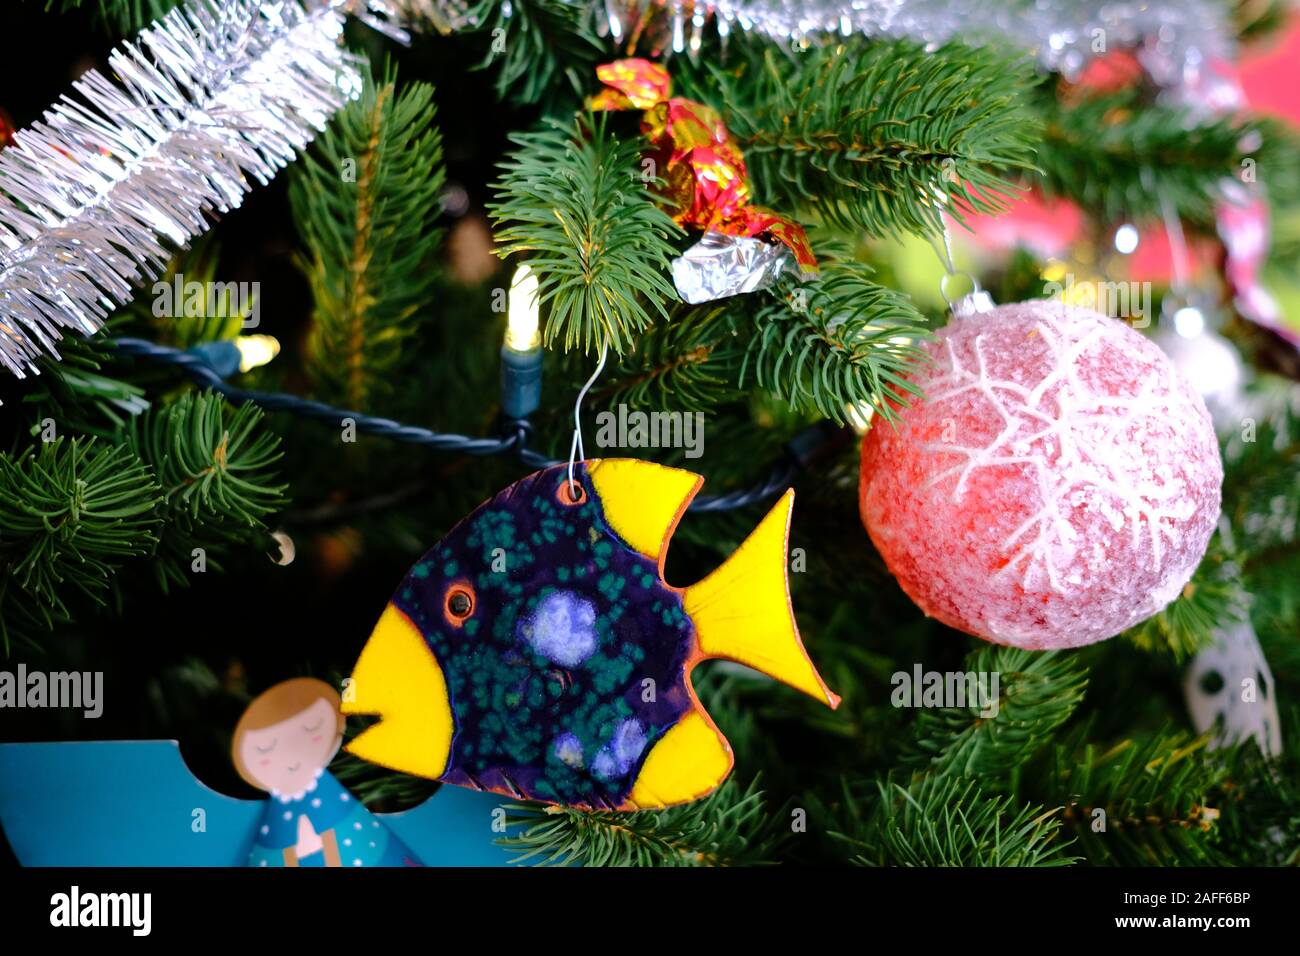 Cerca del árbol de Navidad con adornos, luces, bolas, guirnaldas, papel copos de nieve, bastones de caramelo, cerámica de pescado, etc. Foto de stock